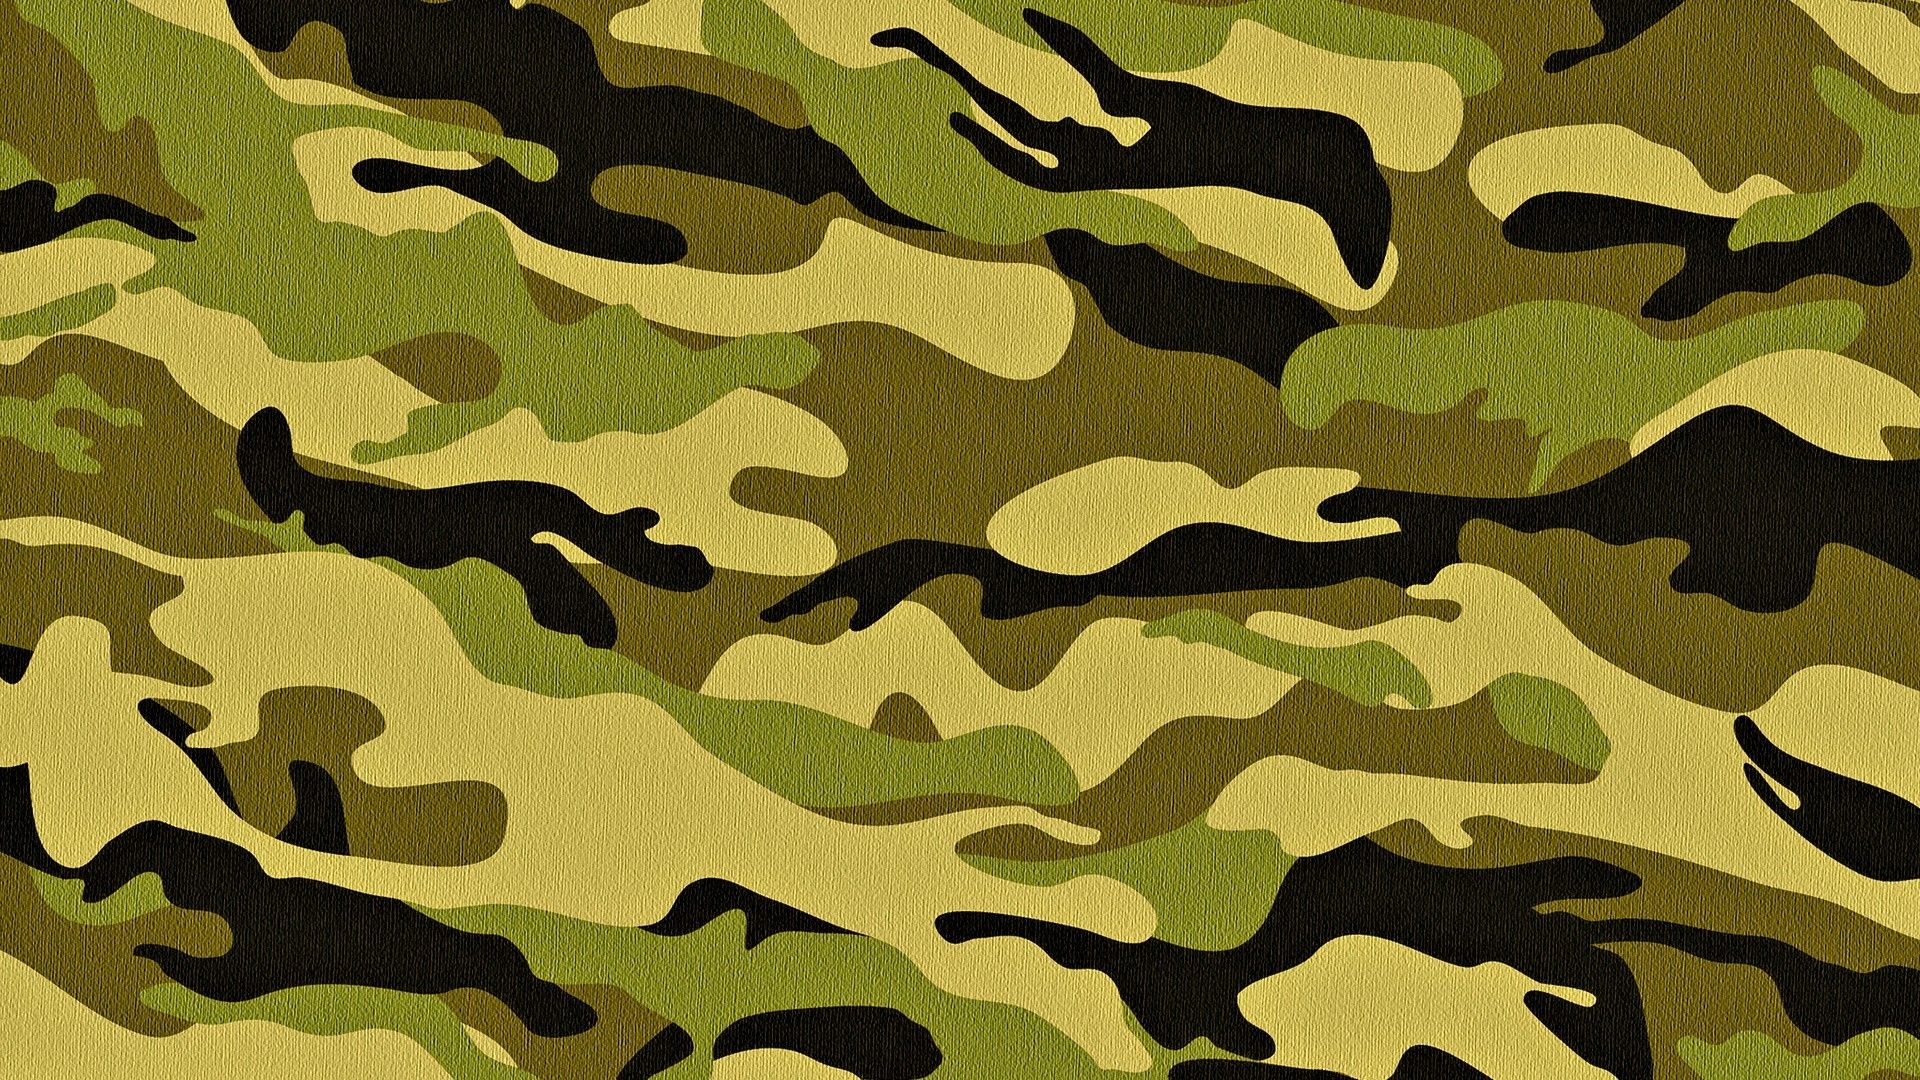 M90 (camouflage) - Wikipedia